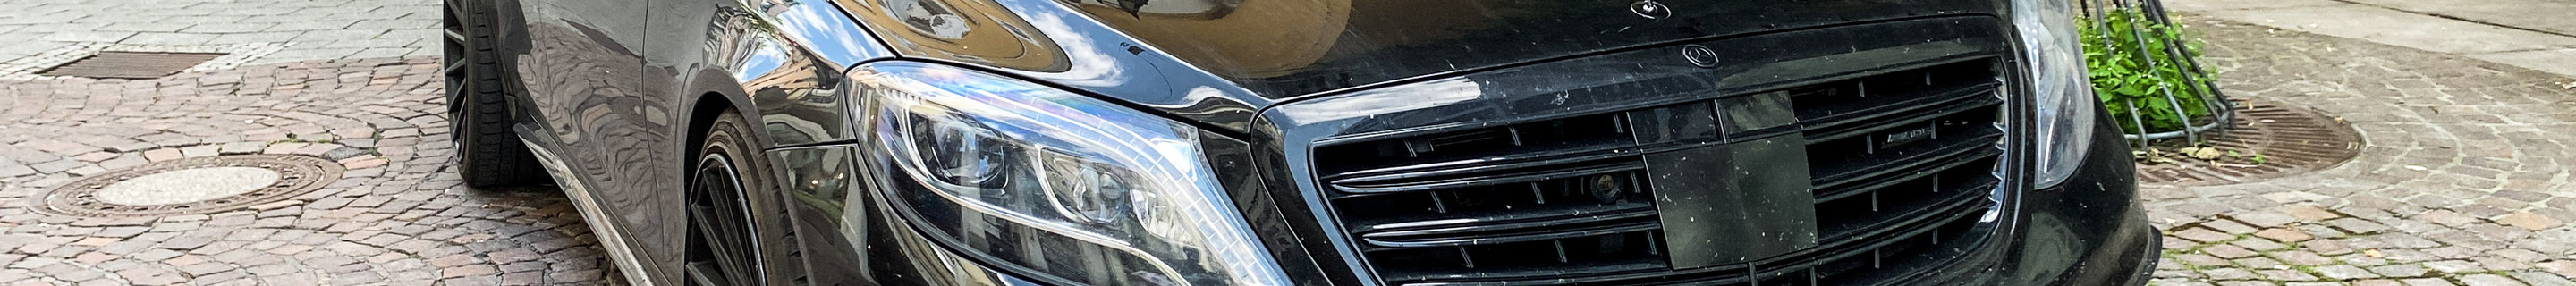 Mercedes-AMG Brabus S 63 V222 2017